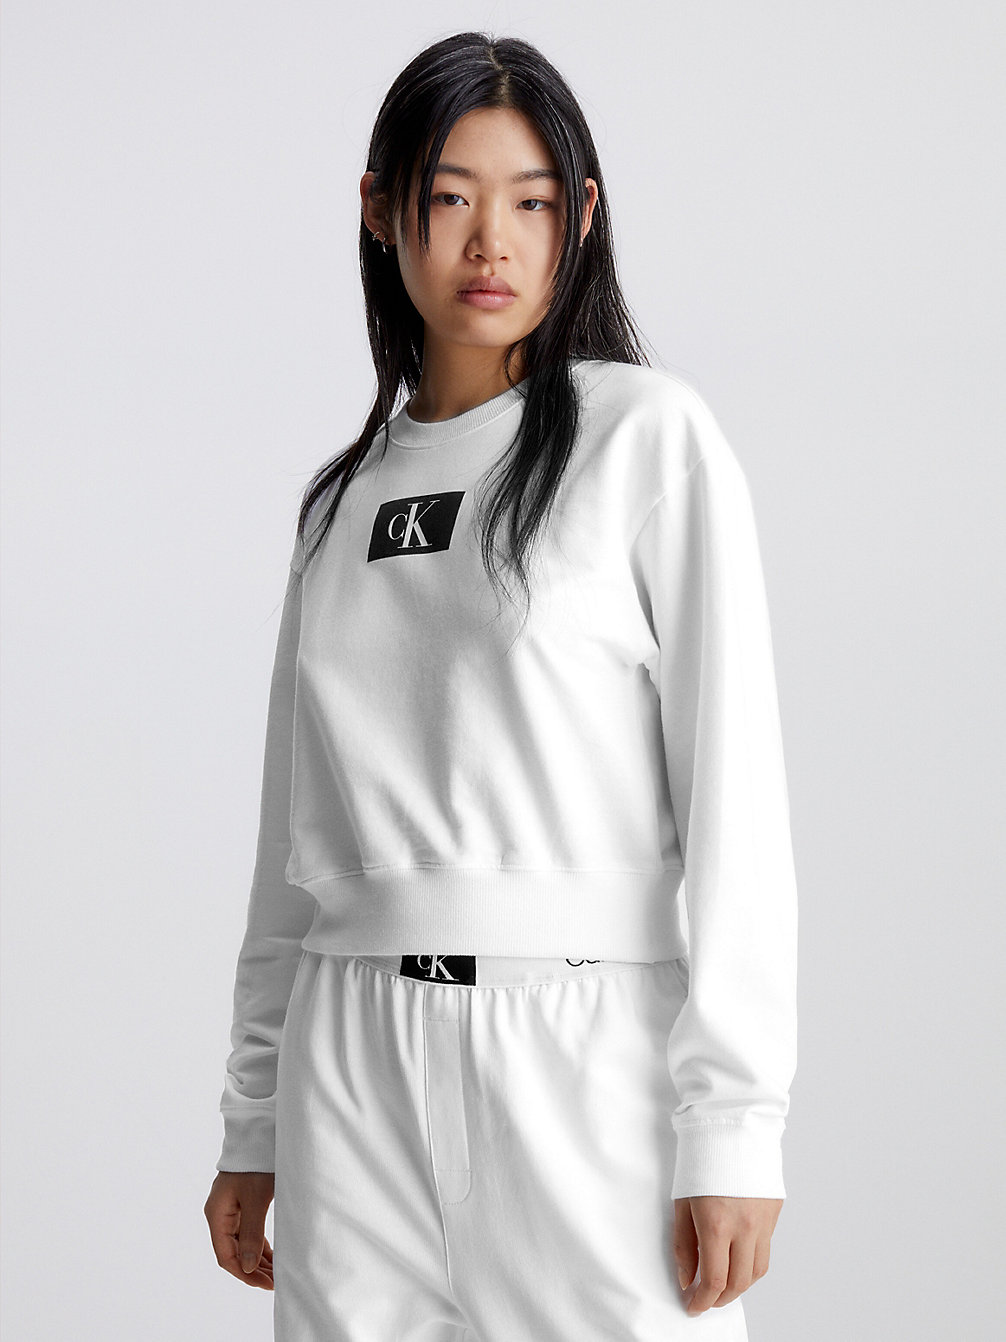 WHITE > Lounge-Sweatshirt - Ck96 > undefined Damen - Calvin Klein